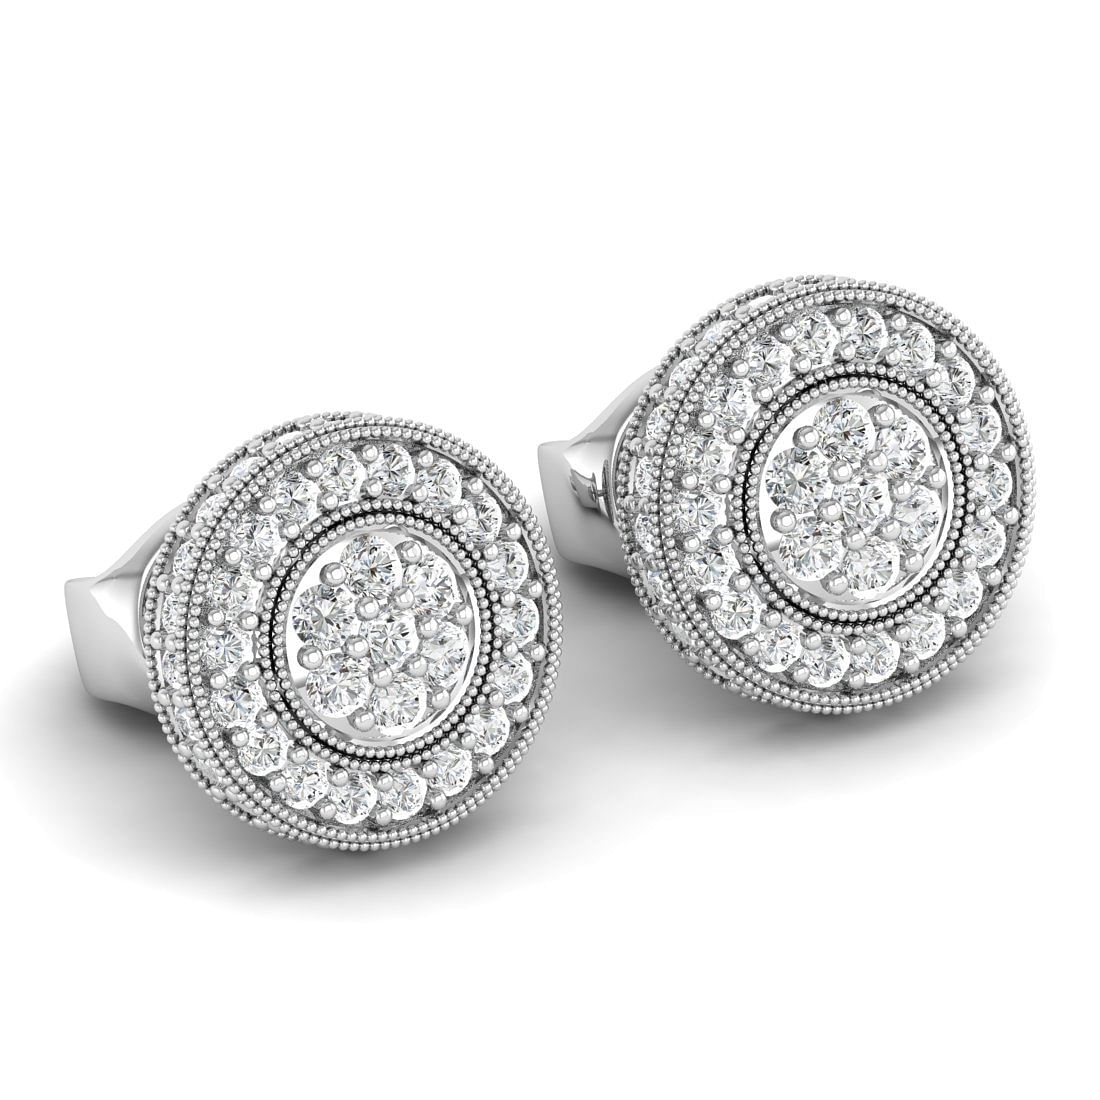 White Gold Jagvi Diamond Earrings For Women